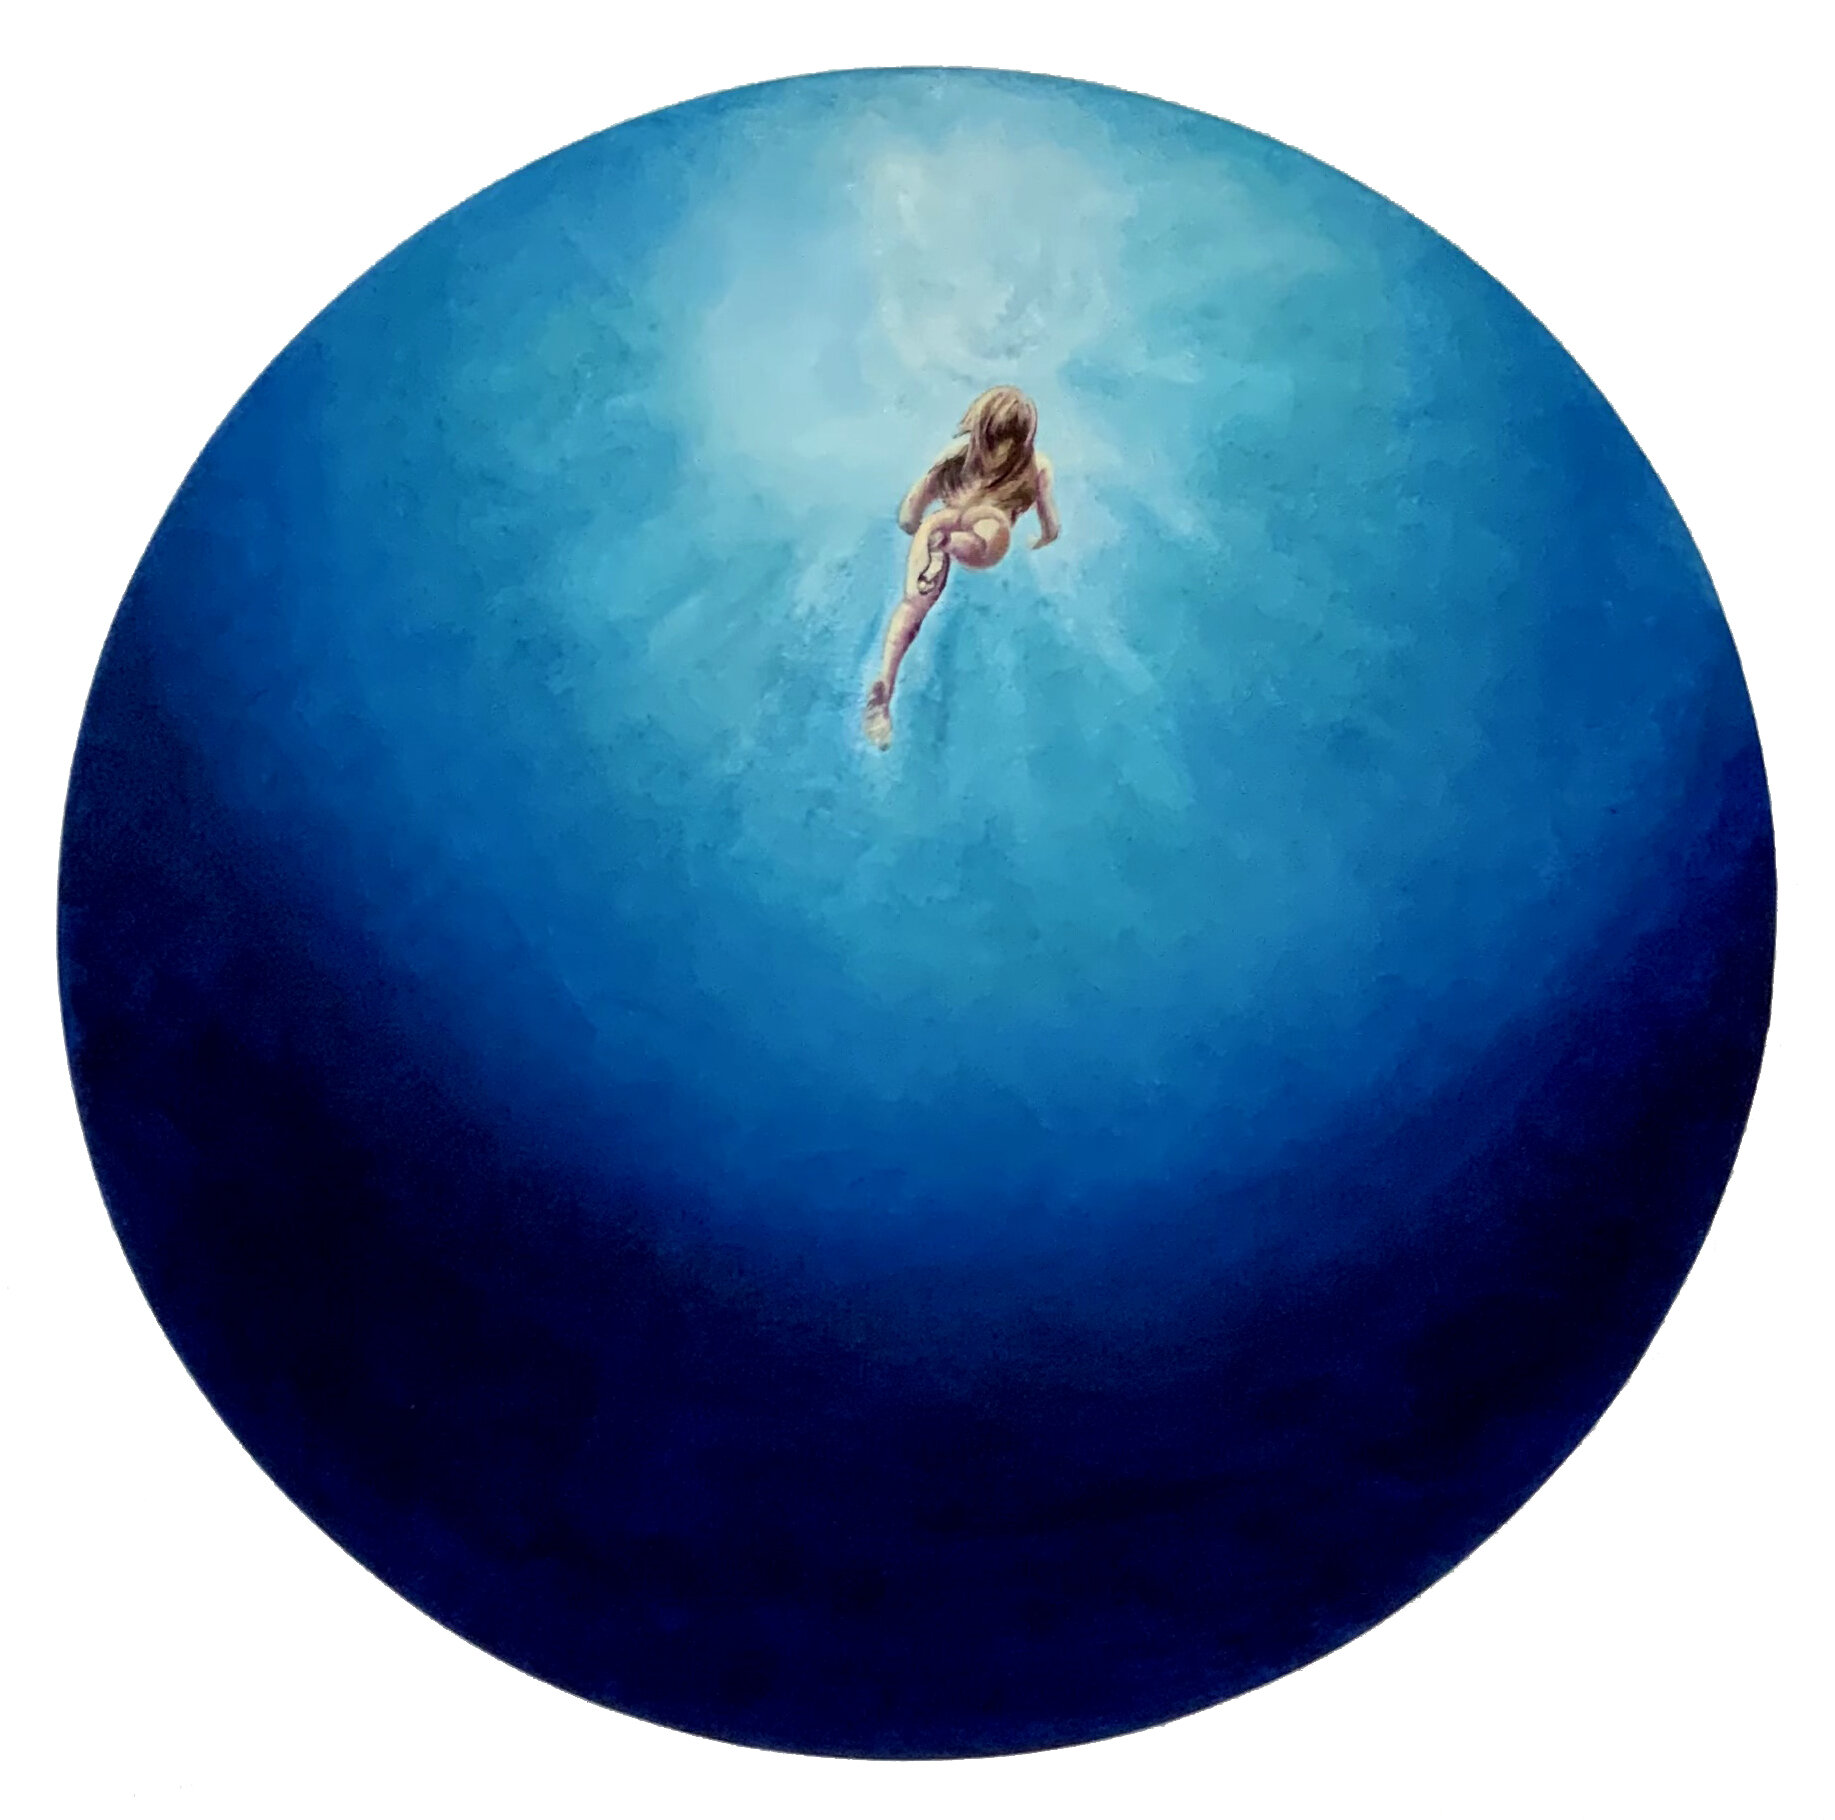  Anastasia Gklava -  Blue Velvet  - Oil on canvas - Dim: 24 in / 60 cm Dia. 